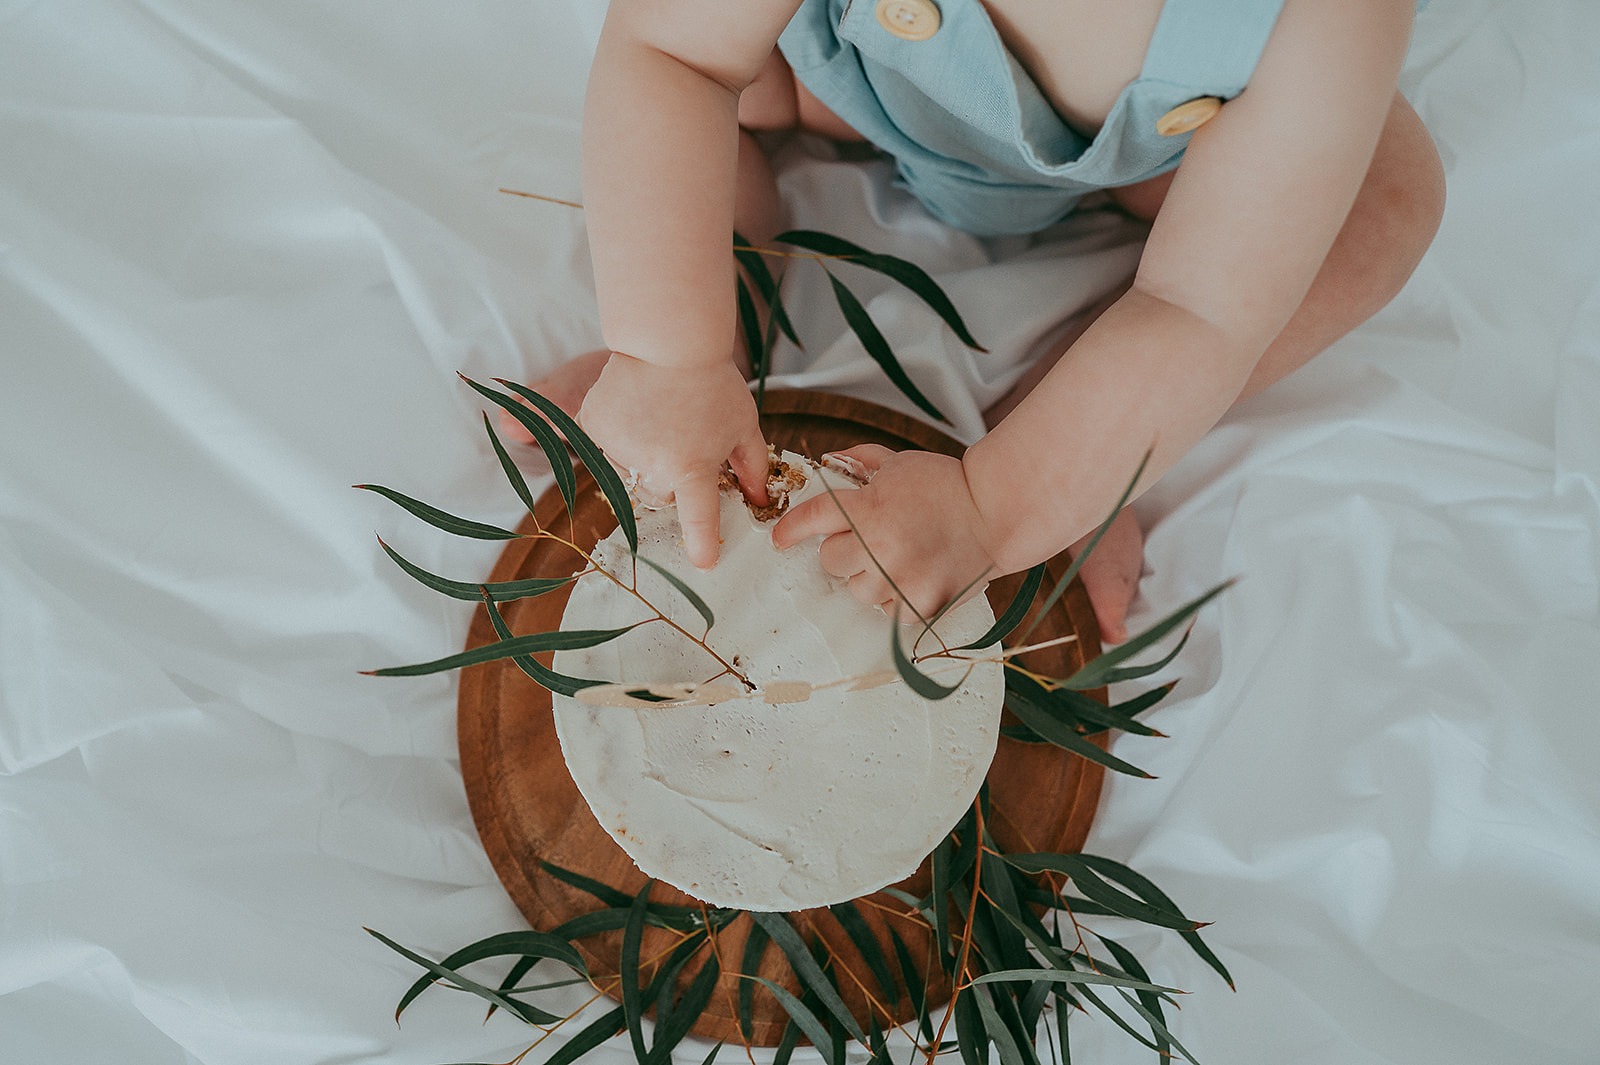 Baby smashing cake with eucalyptus leaves